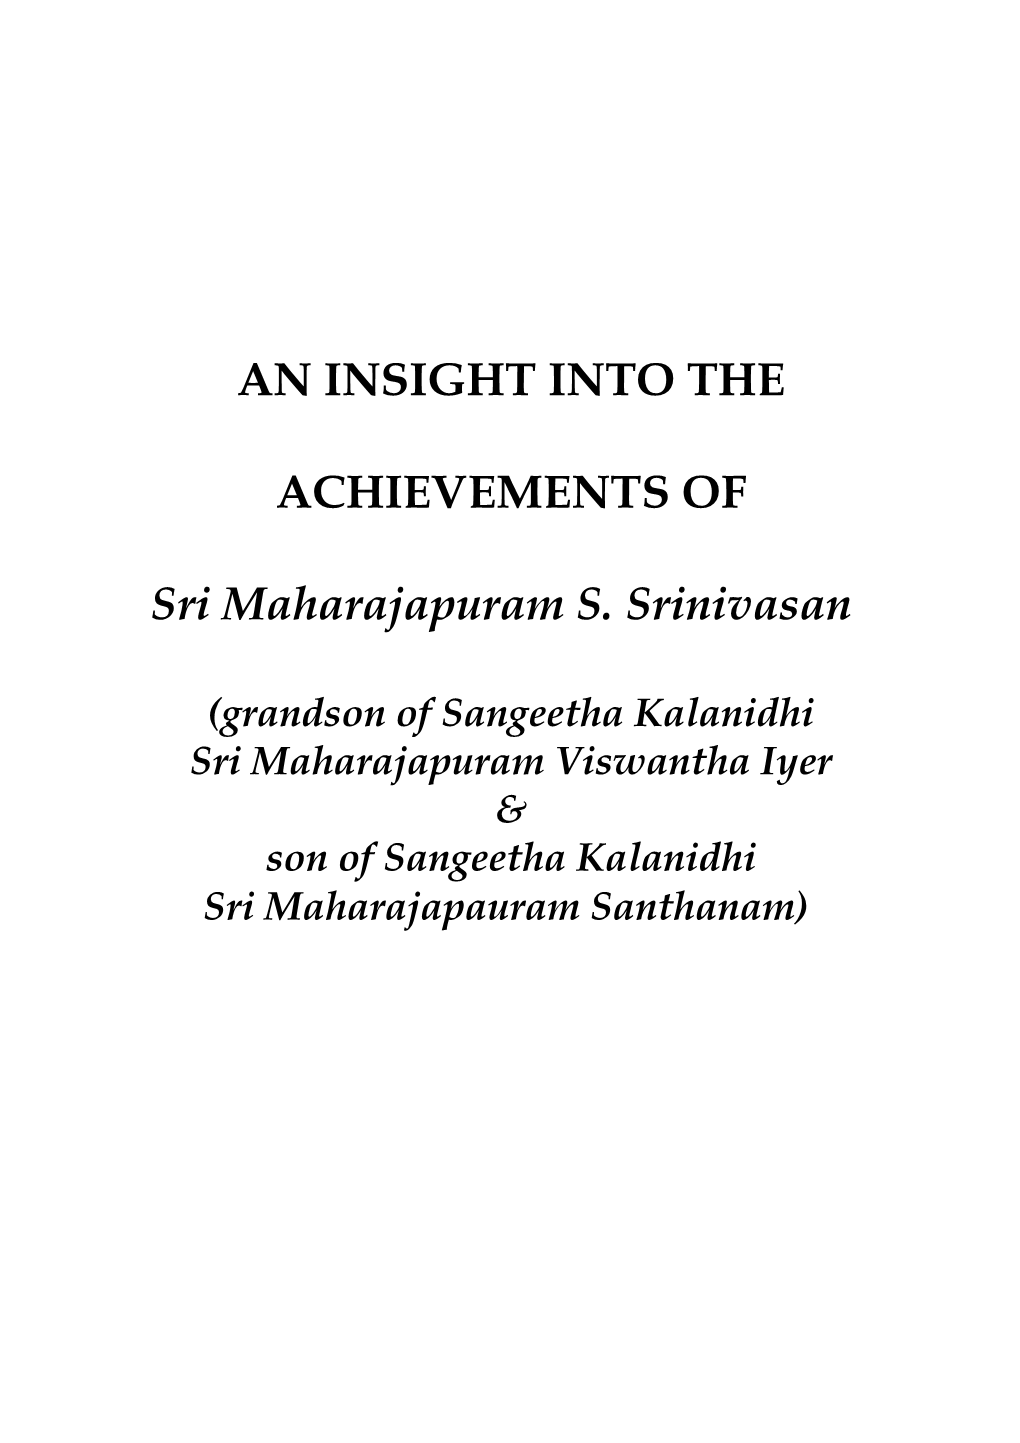 Maharajapuram Srinivasan's C.V Updated